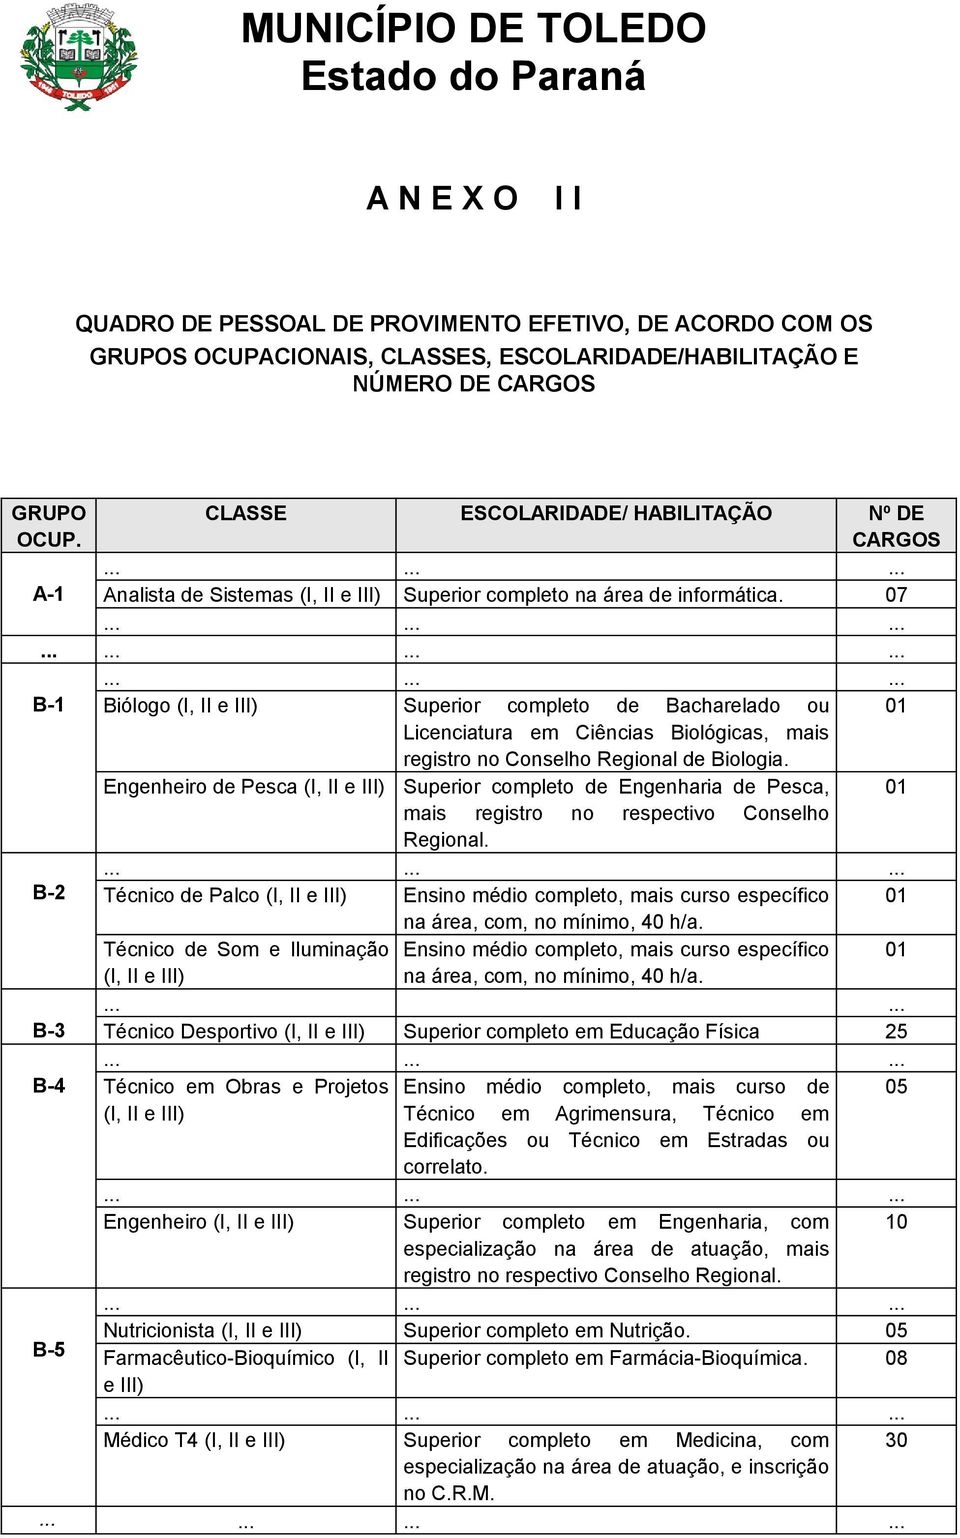 07 B-1 Biólogo (I, II e III) Superior completo de Bacharelado ou 01 Licenciatura em Ciências Biológicas, mais registro no Conselho Regional de Biologia.